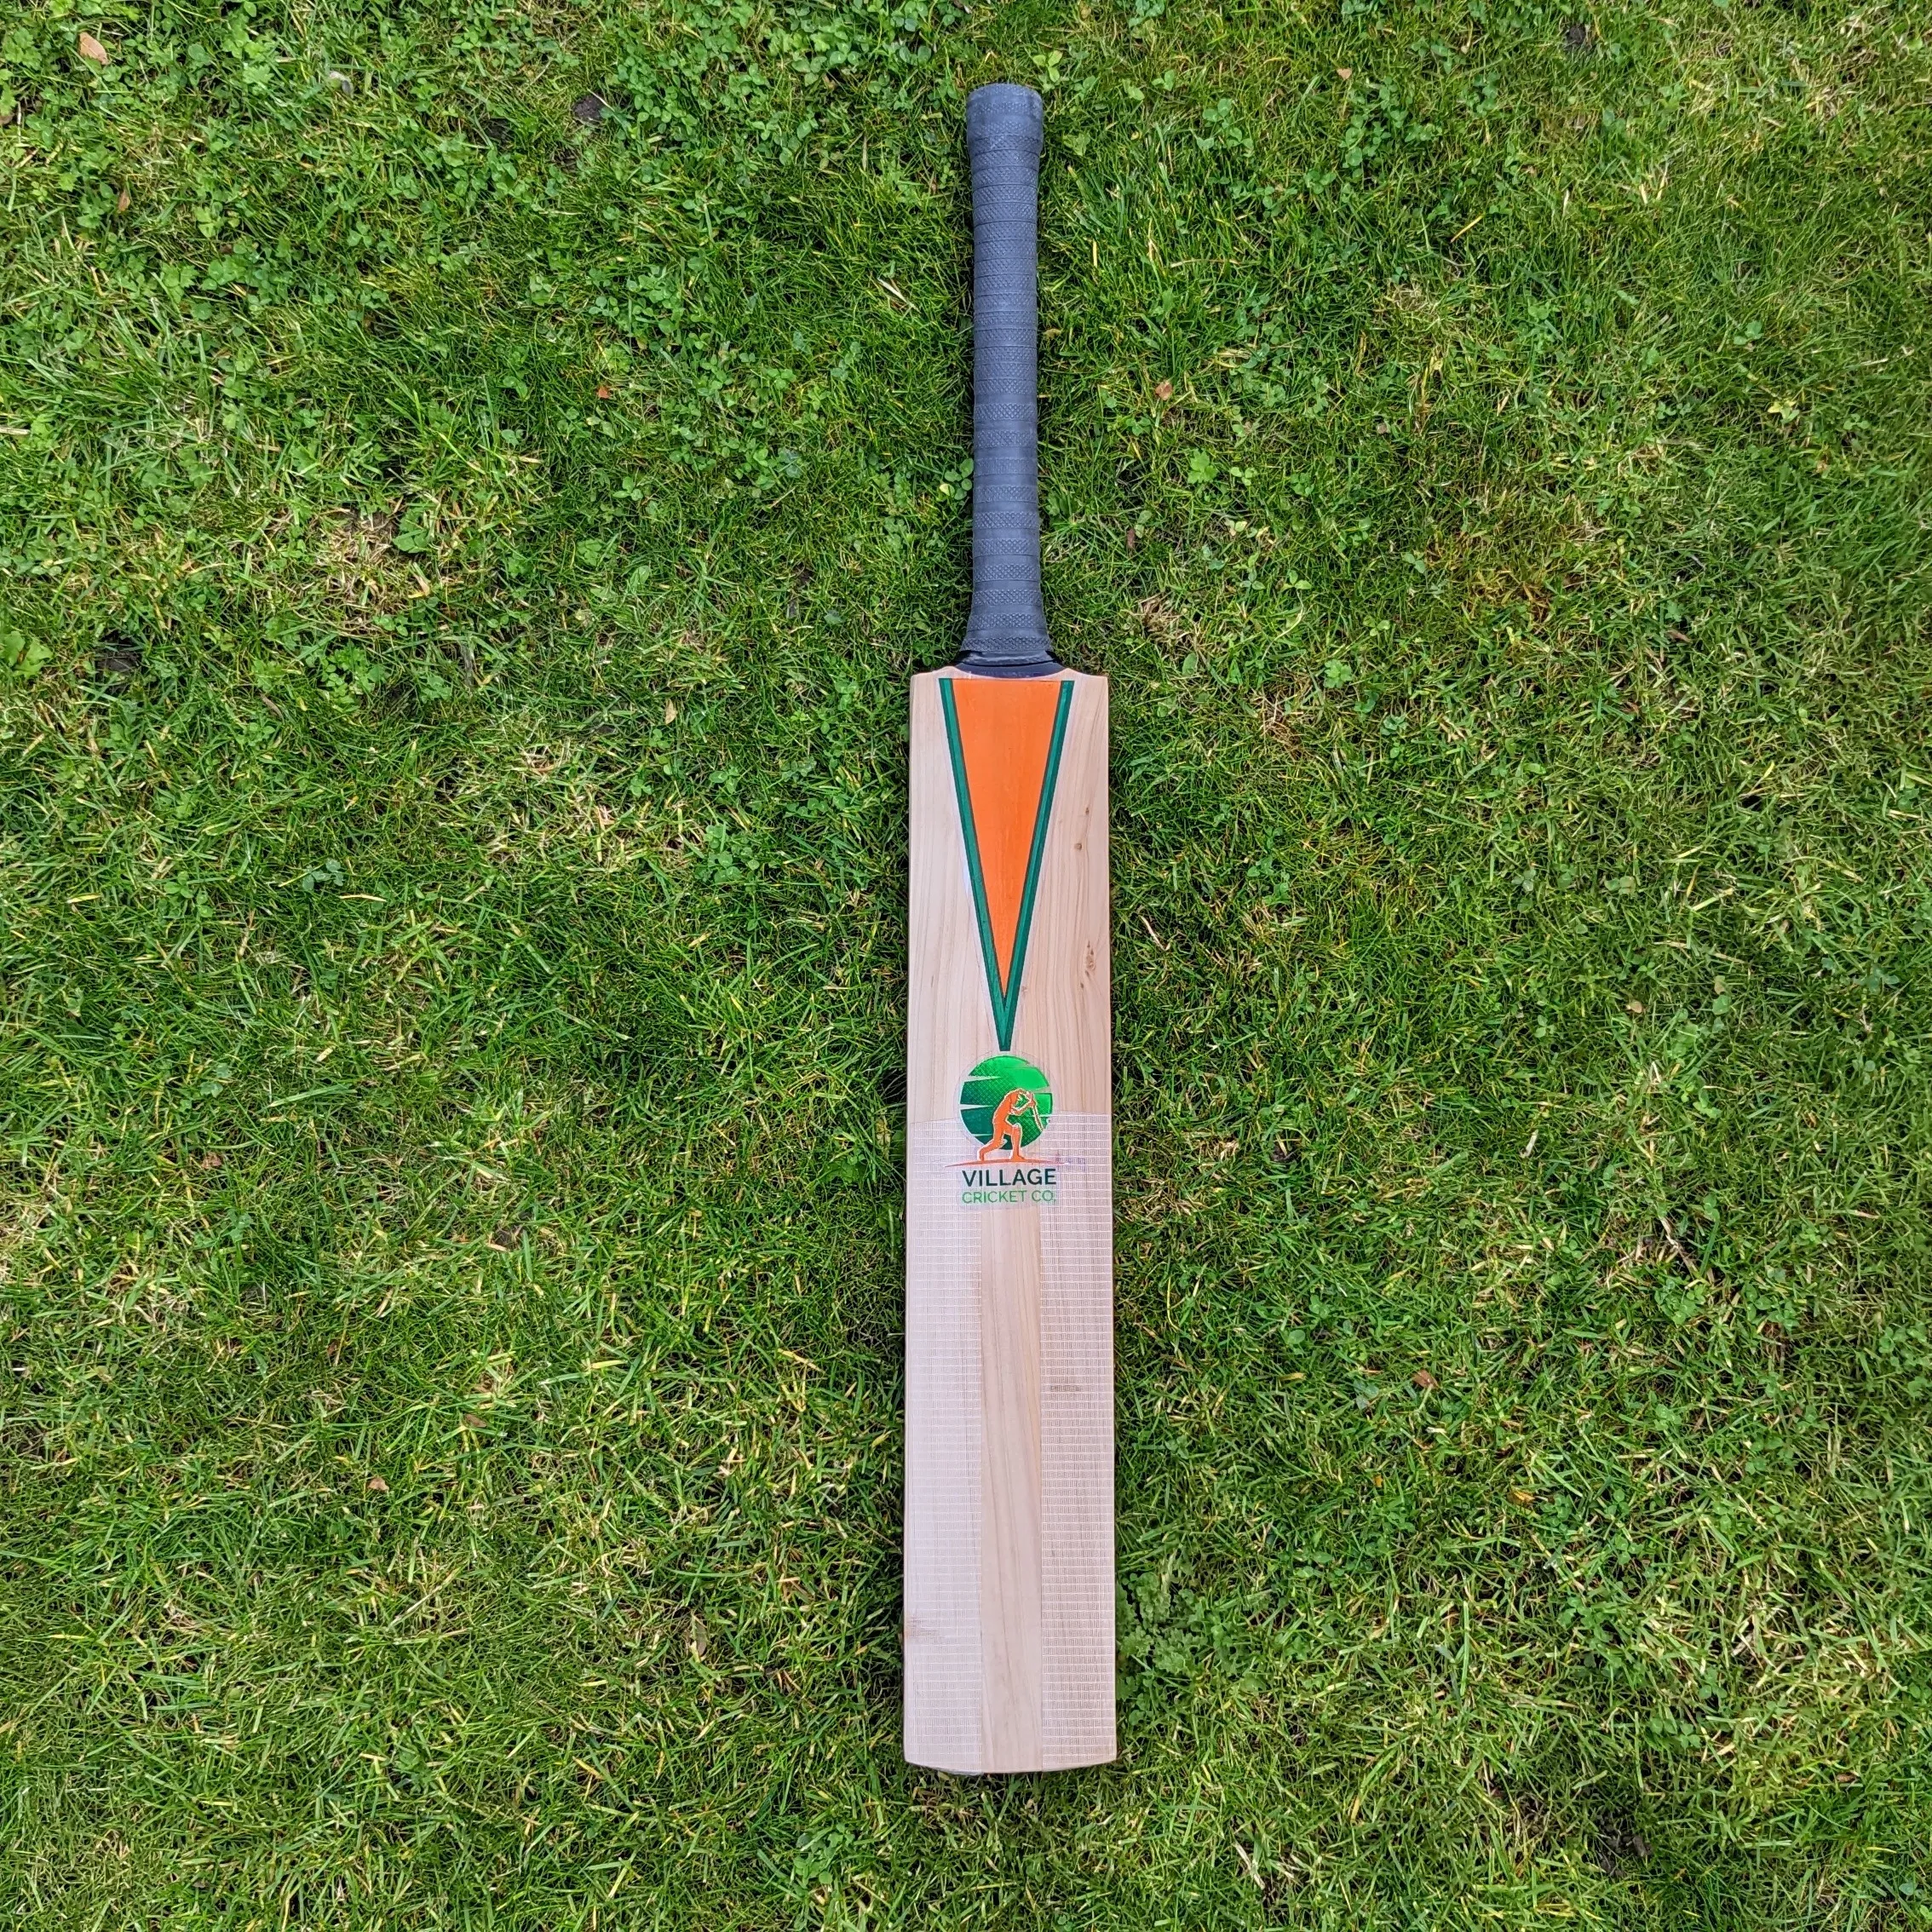 Our cheap long handle cricket bat